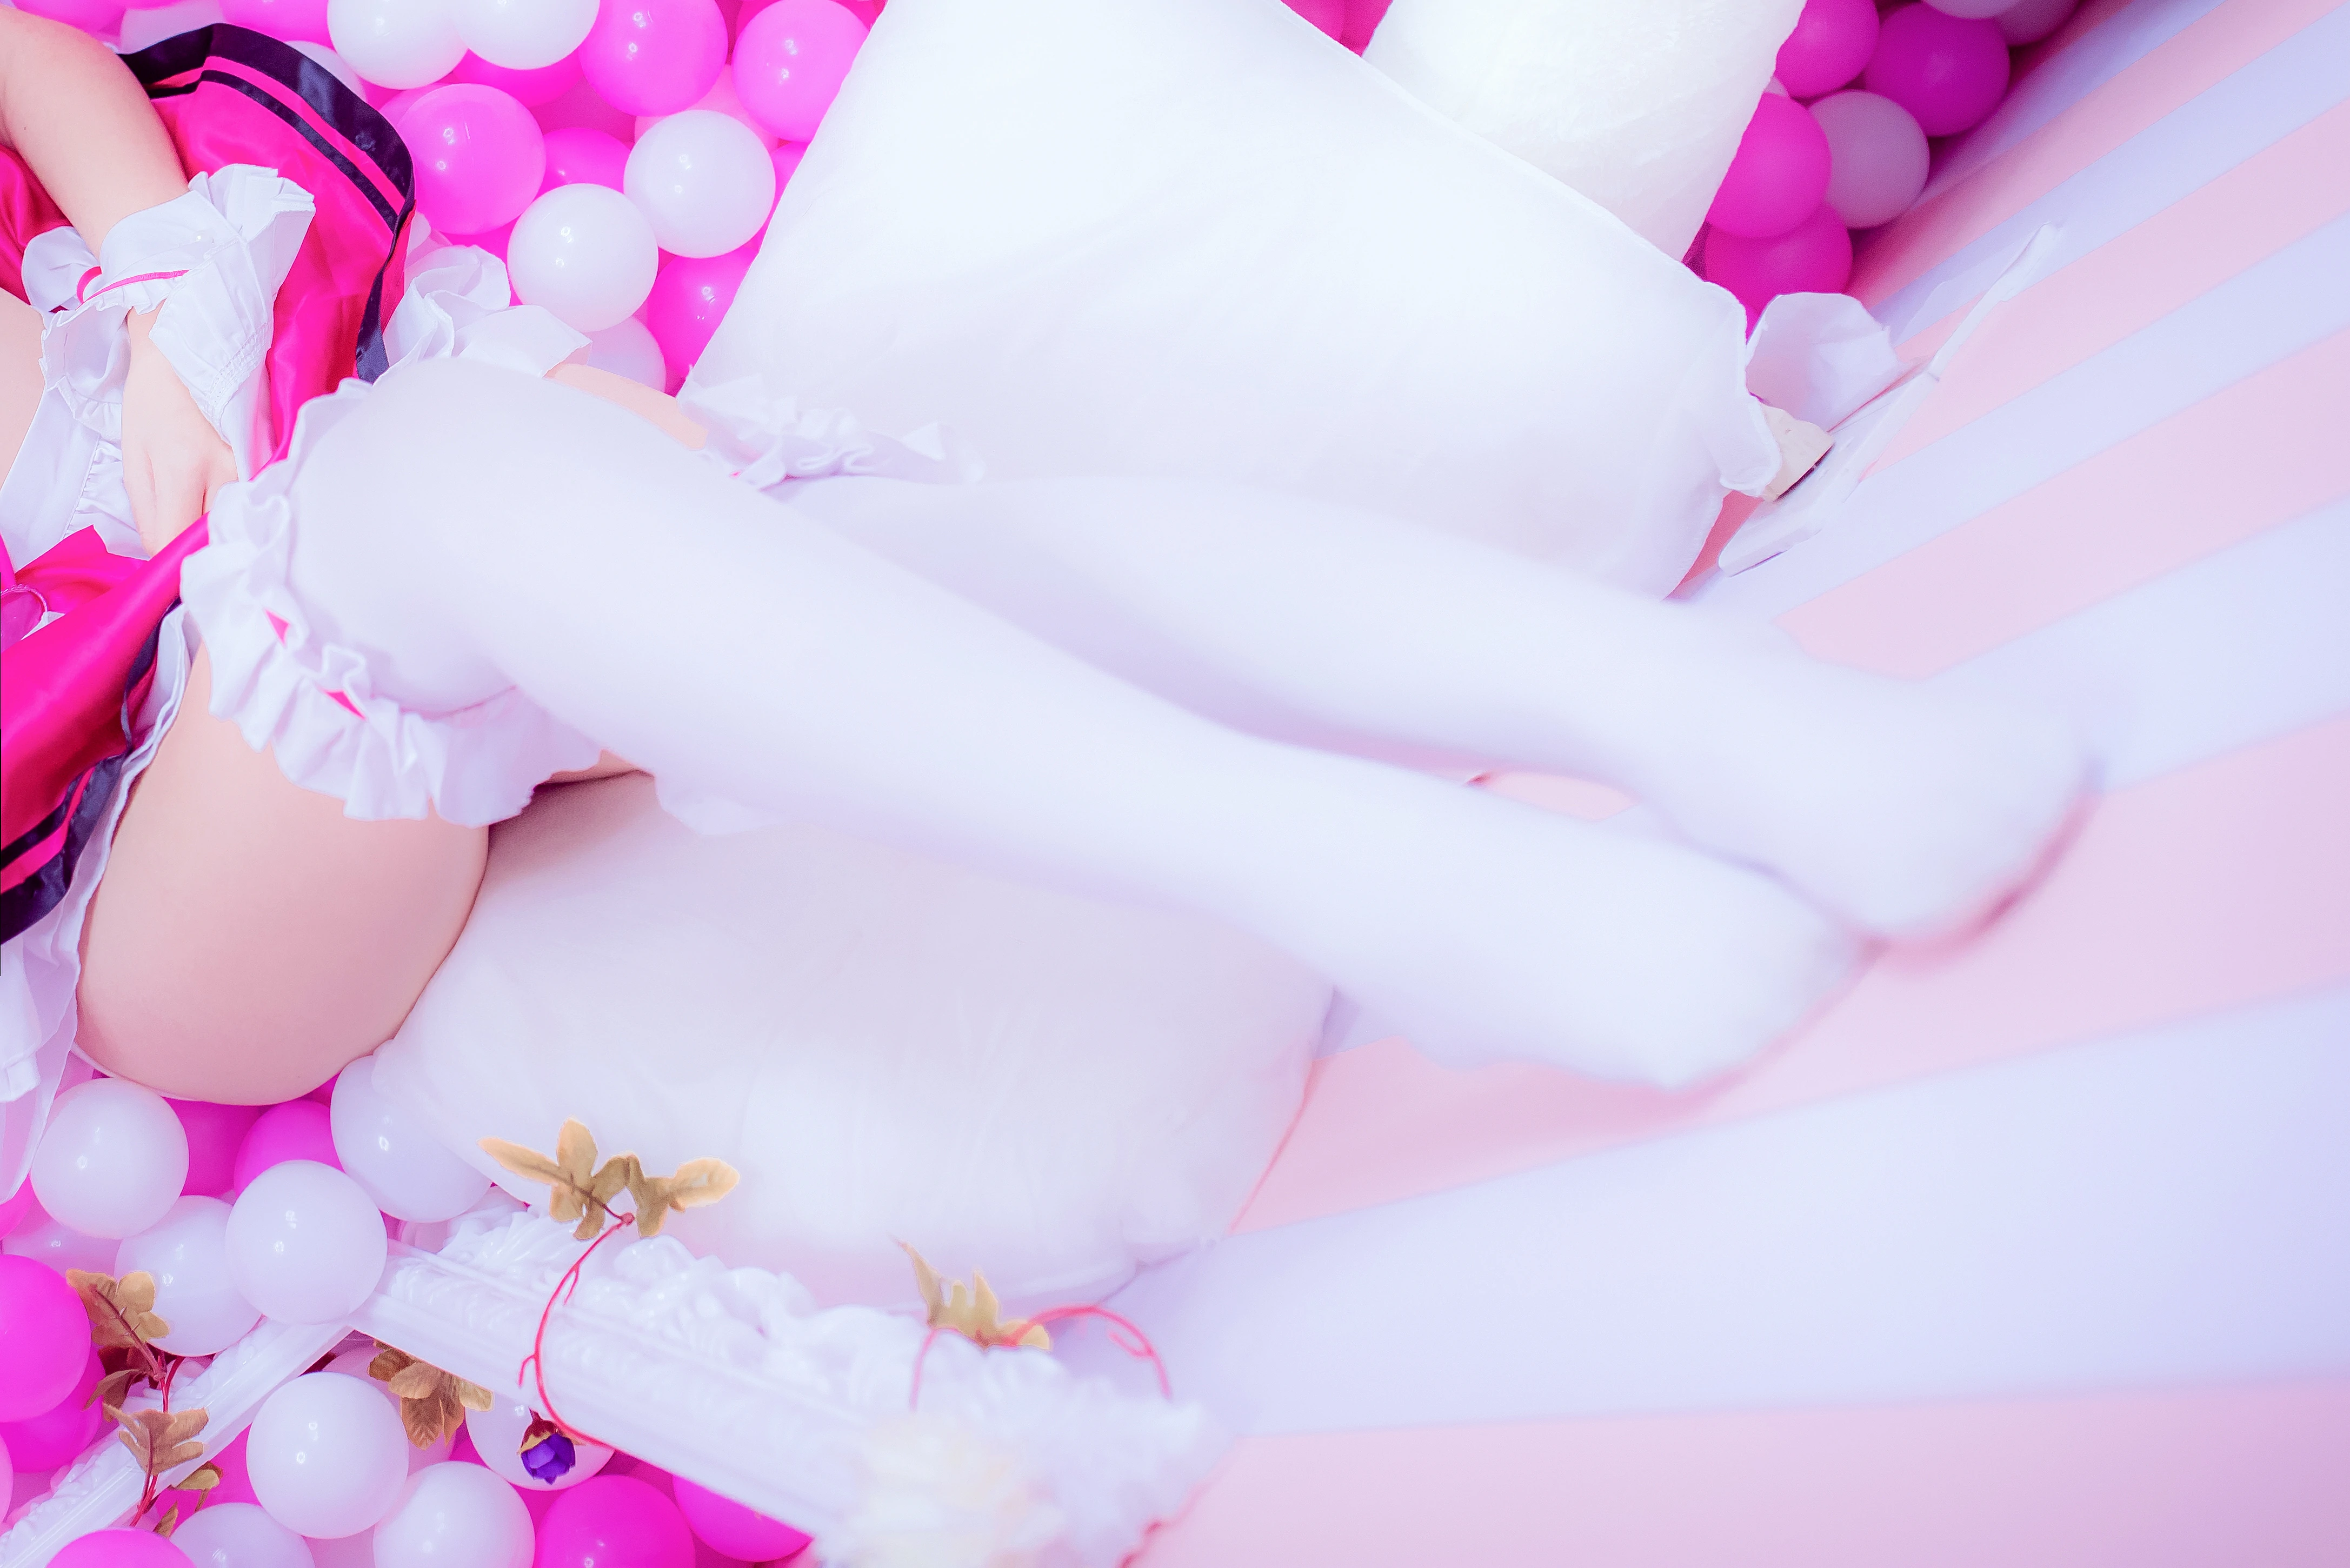 网红清纯少女 二佐Nisa 情趣制服与粉色短裙加白色丝袜美腿私房写真,